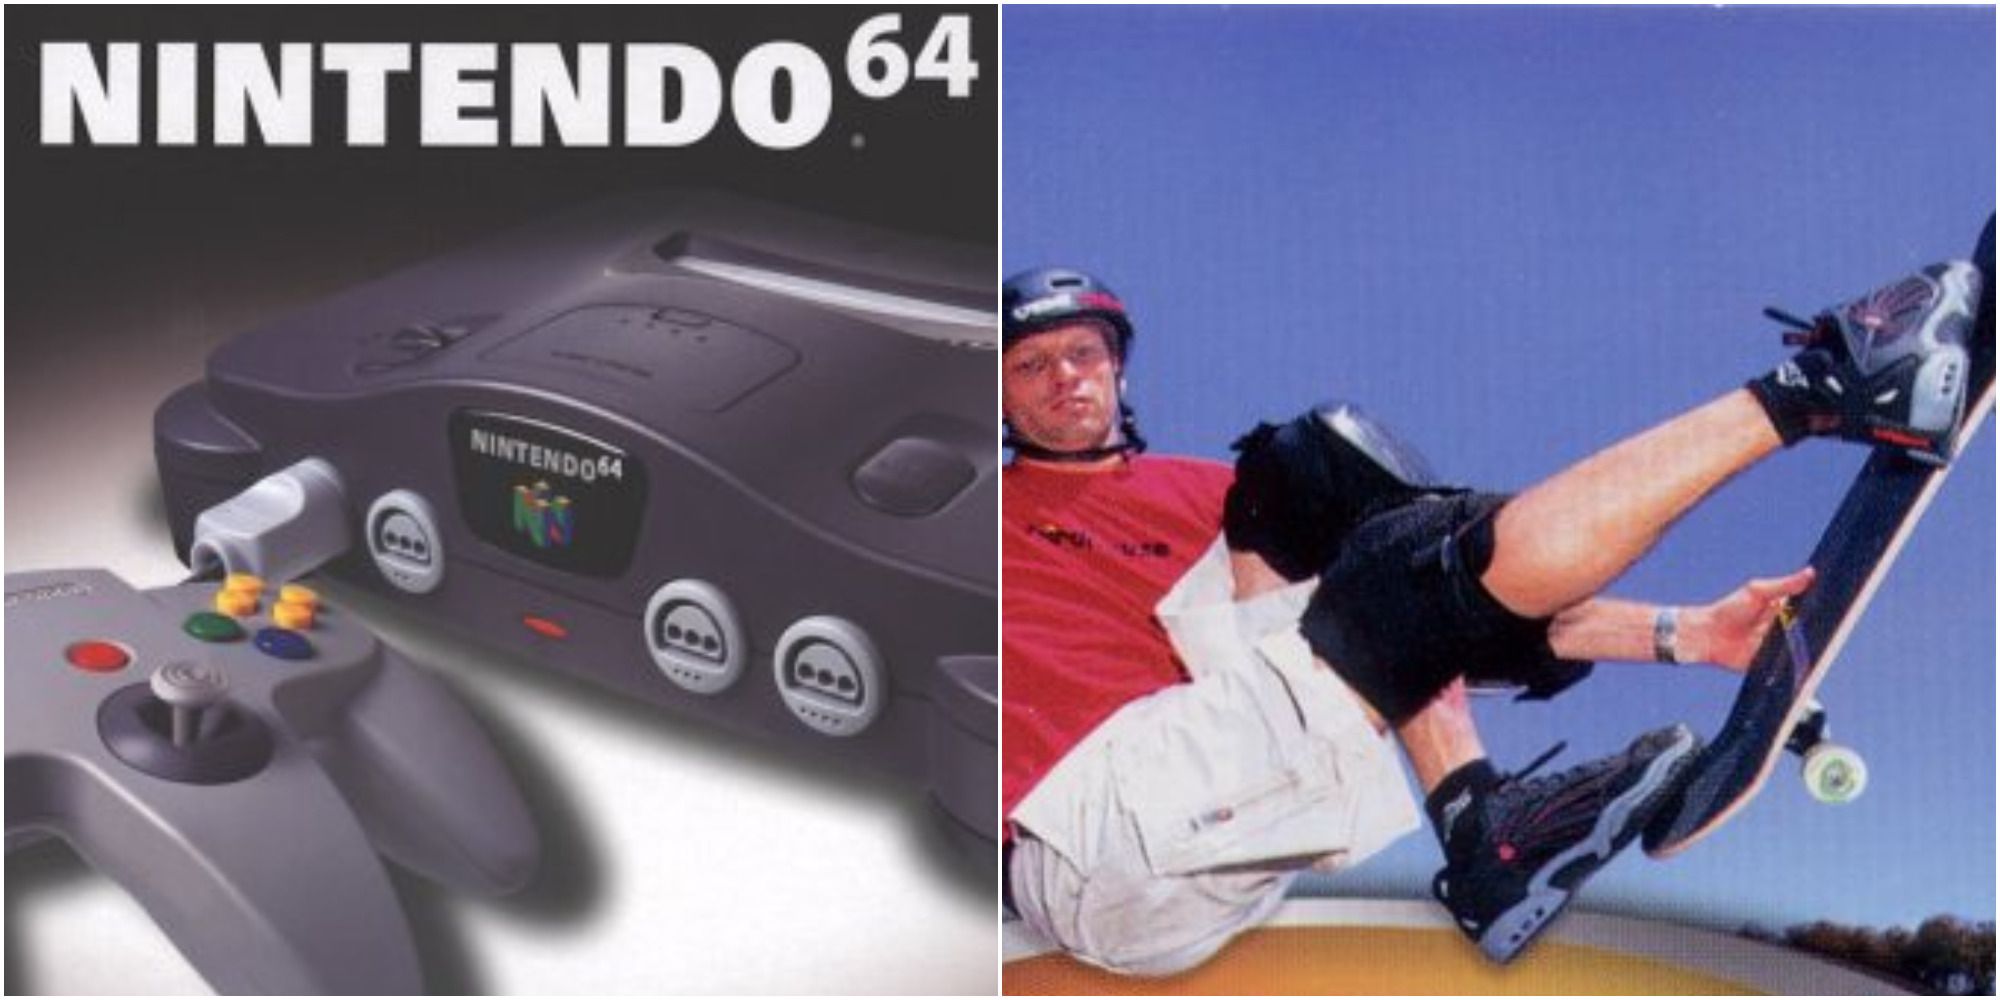 Nintendo 64 Box Art and Tony Hawk's Pro Skater 3 cover